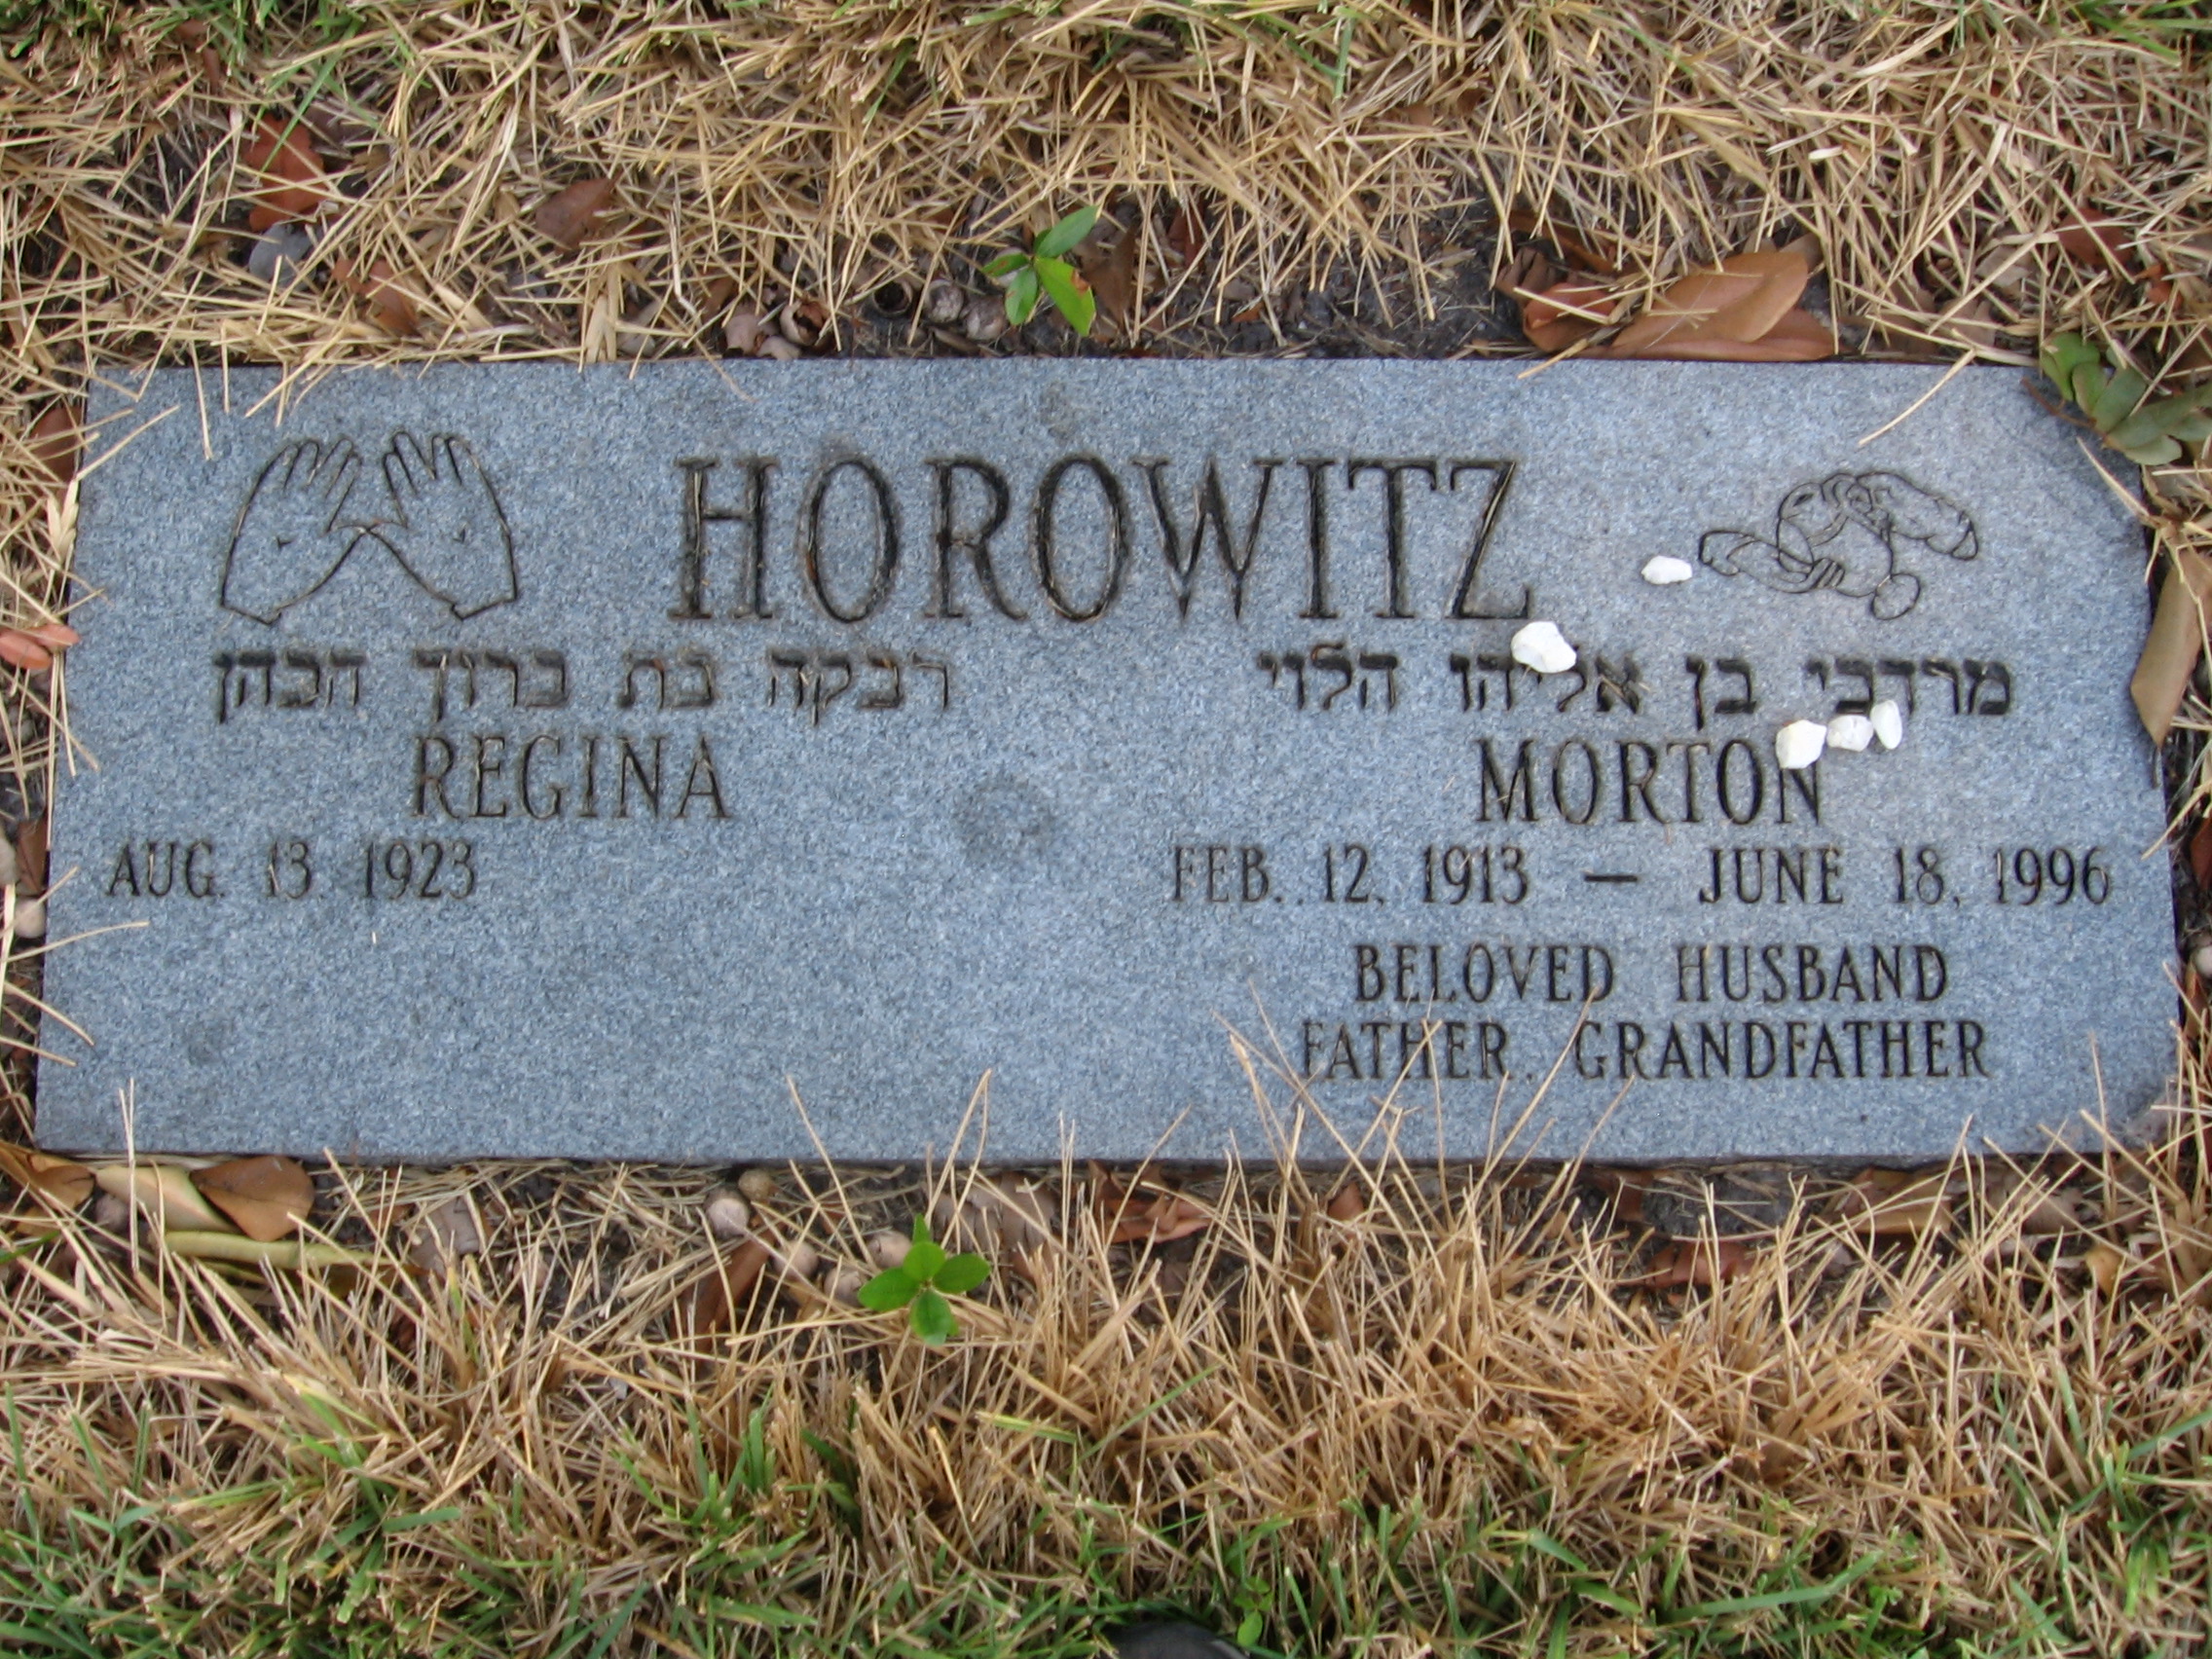 Regina Horowitz